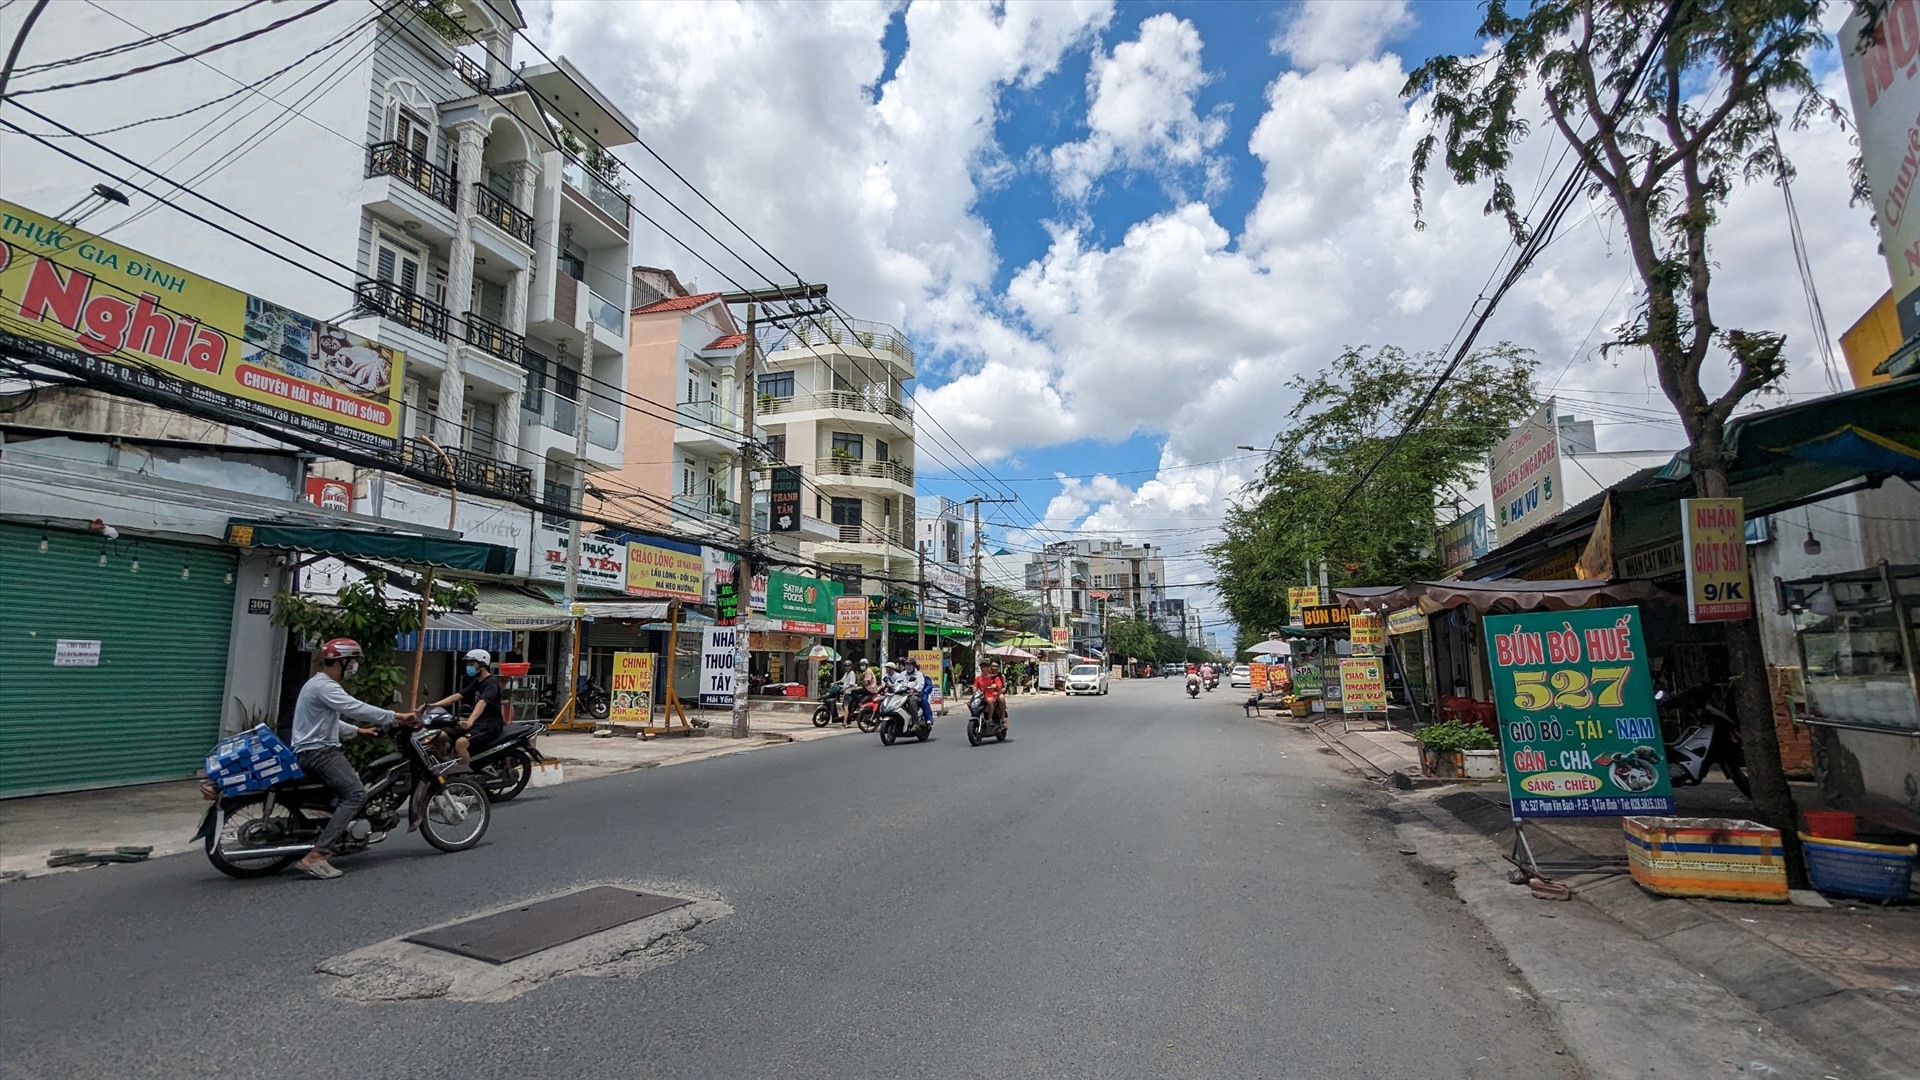 Con đường thịt chó ở đường Phạm Văn Bạch, Quận Tân Bình giờ đã không còn hàng quán nào.